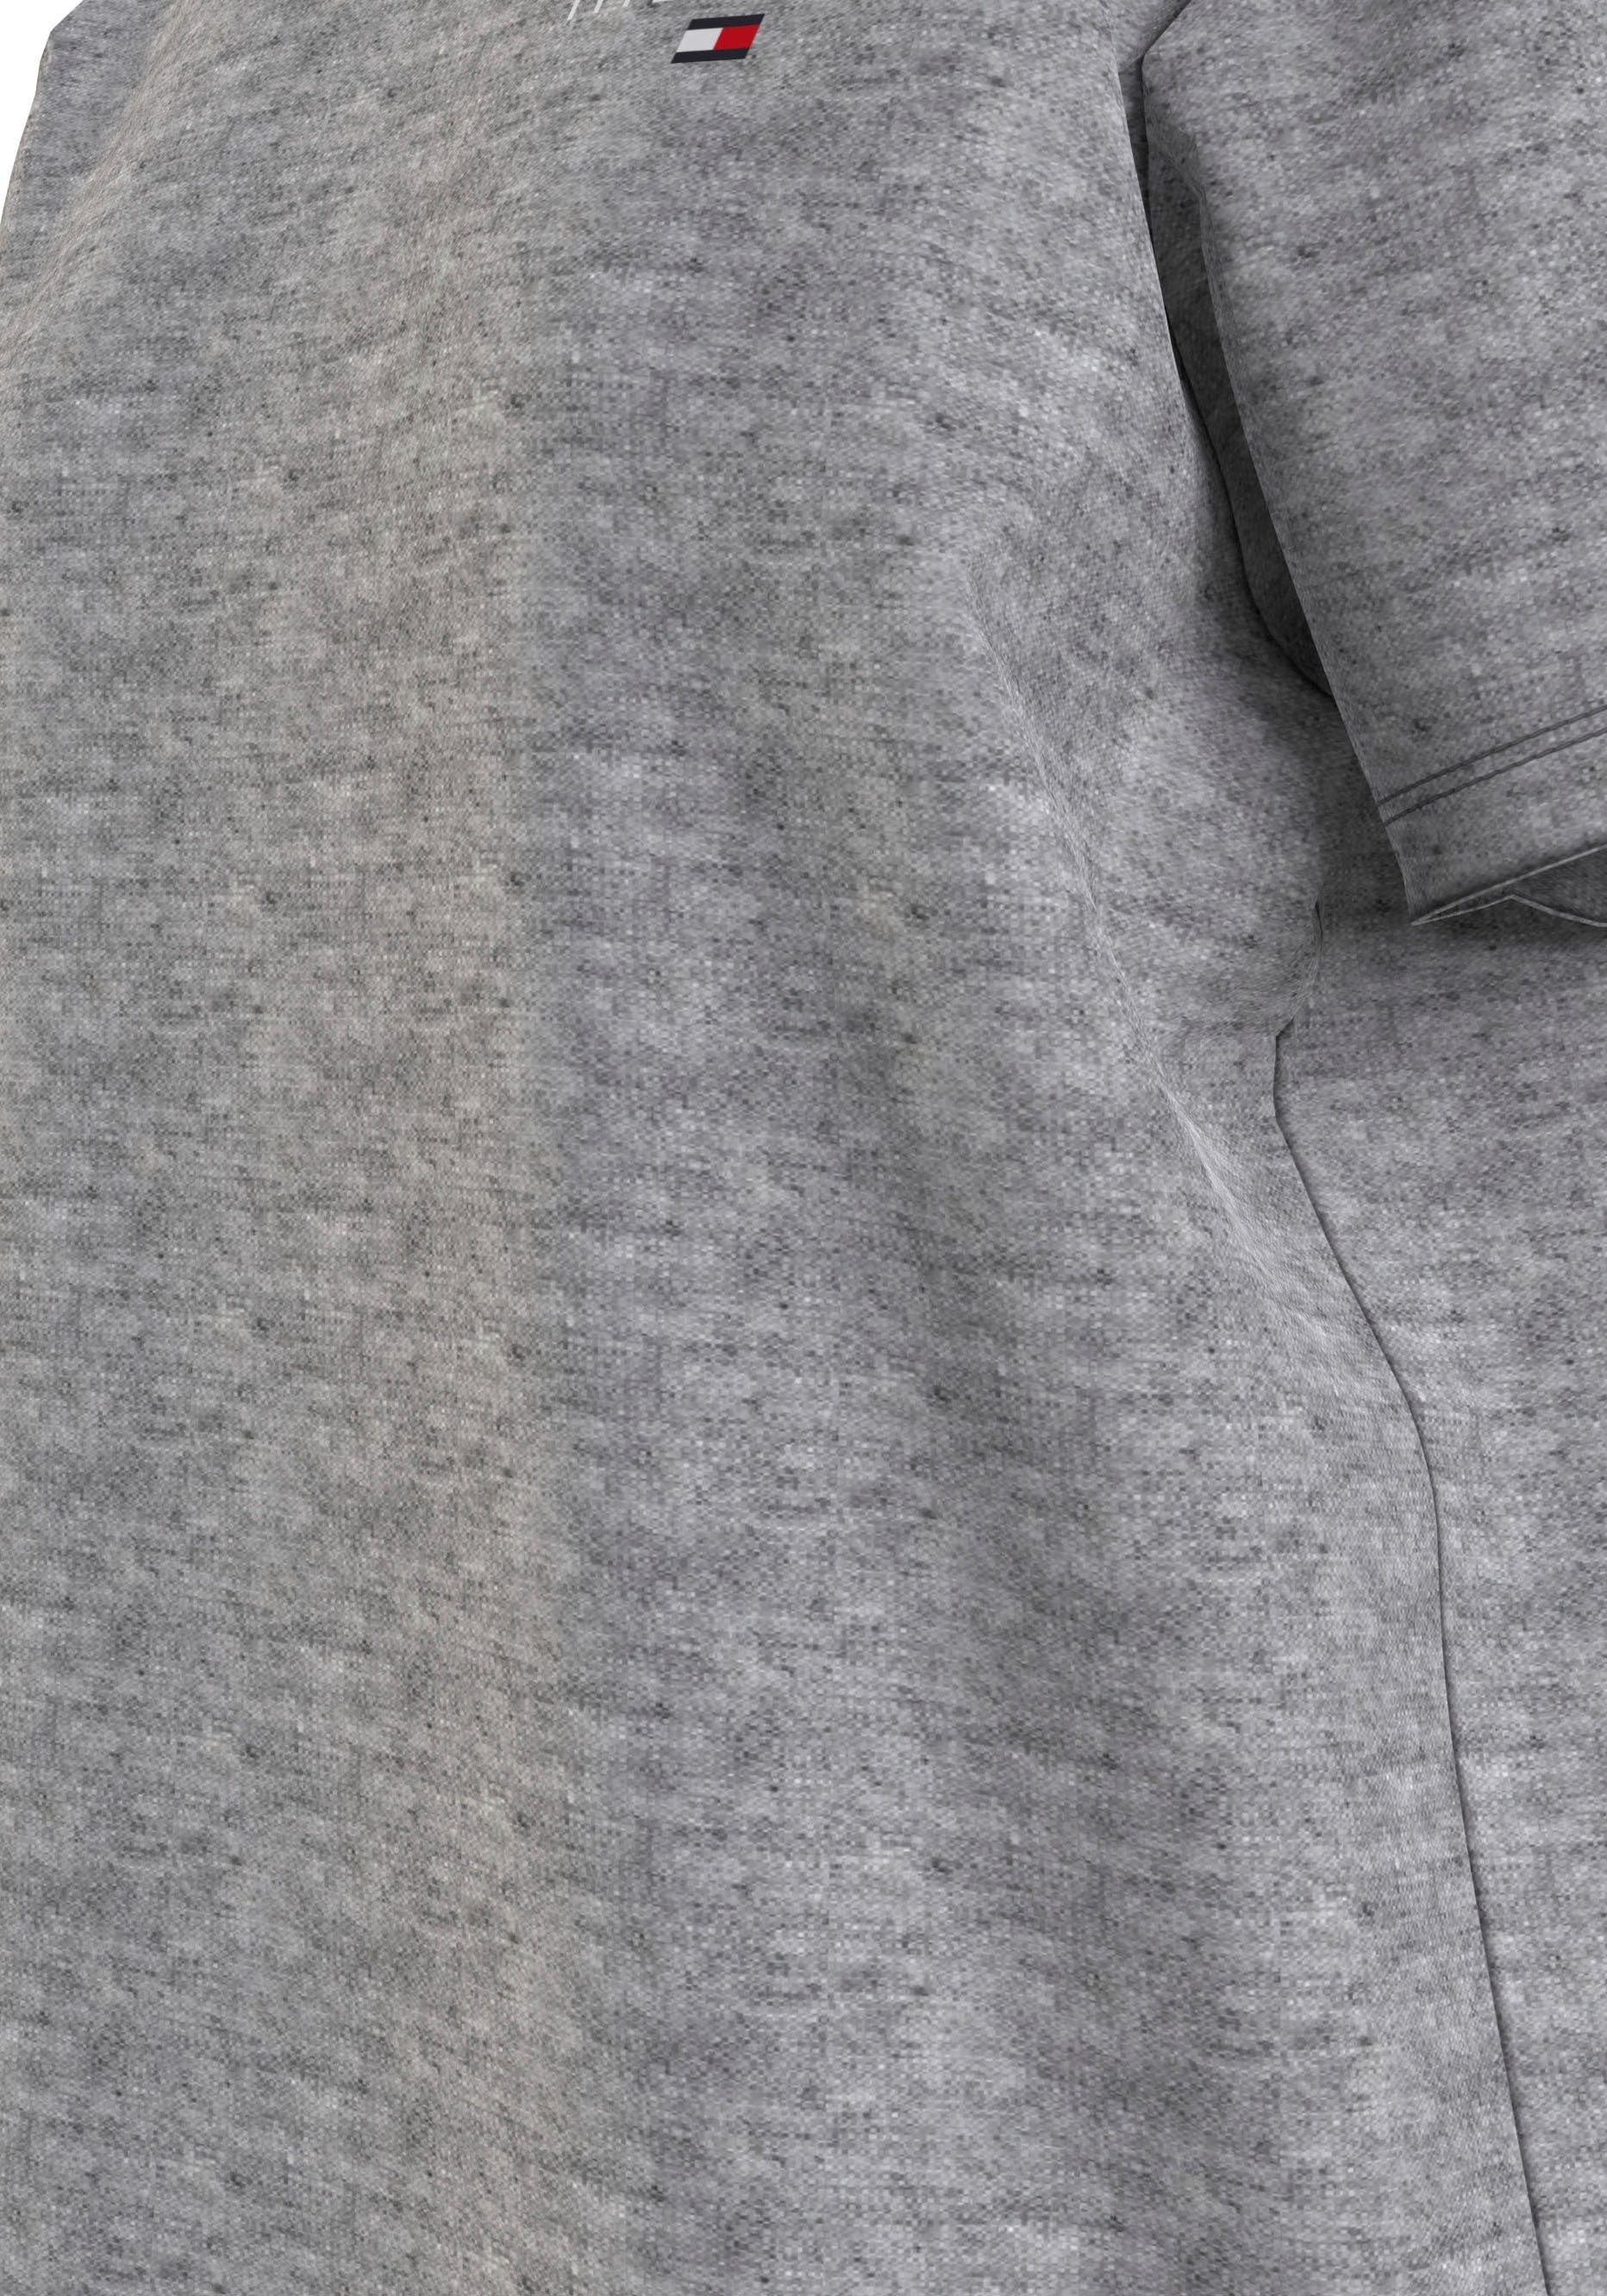 Nachthemd SLEEVE mit Tommy Hilfiger Logoaufdruck Underwear Tommy Hilfiger SHORT T-SHIRT DRESS